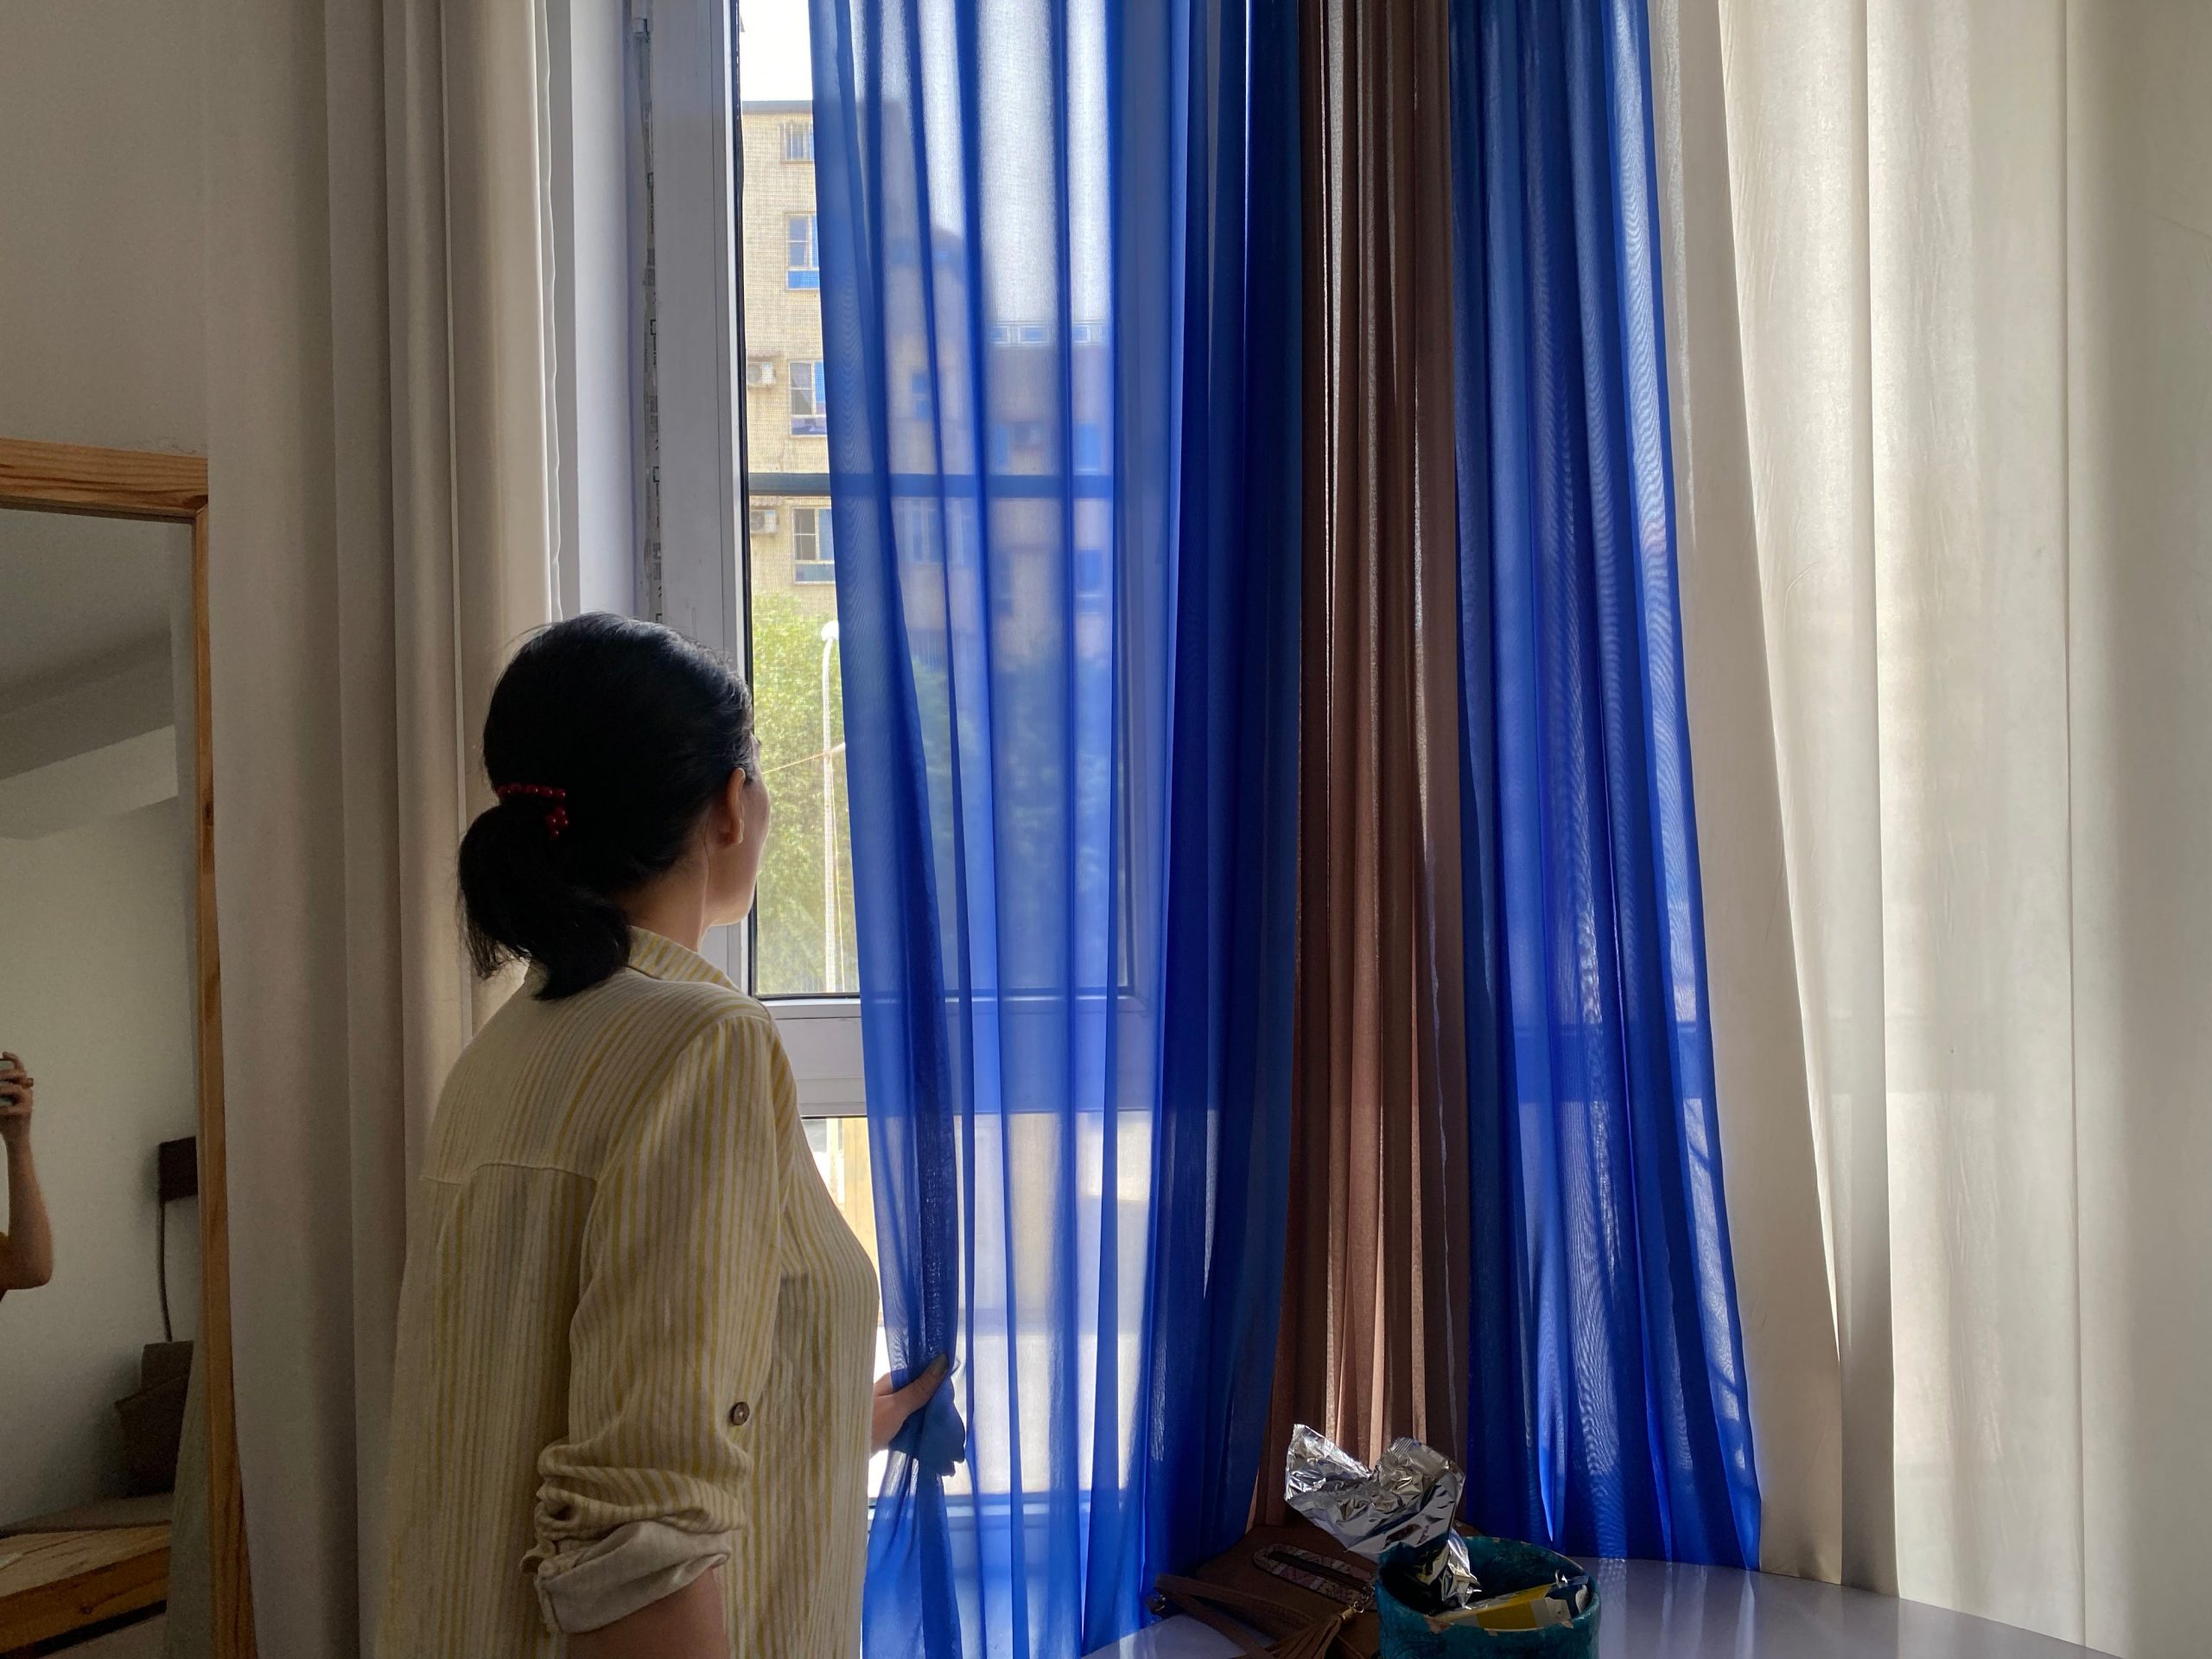 A women looks behind a curtain.